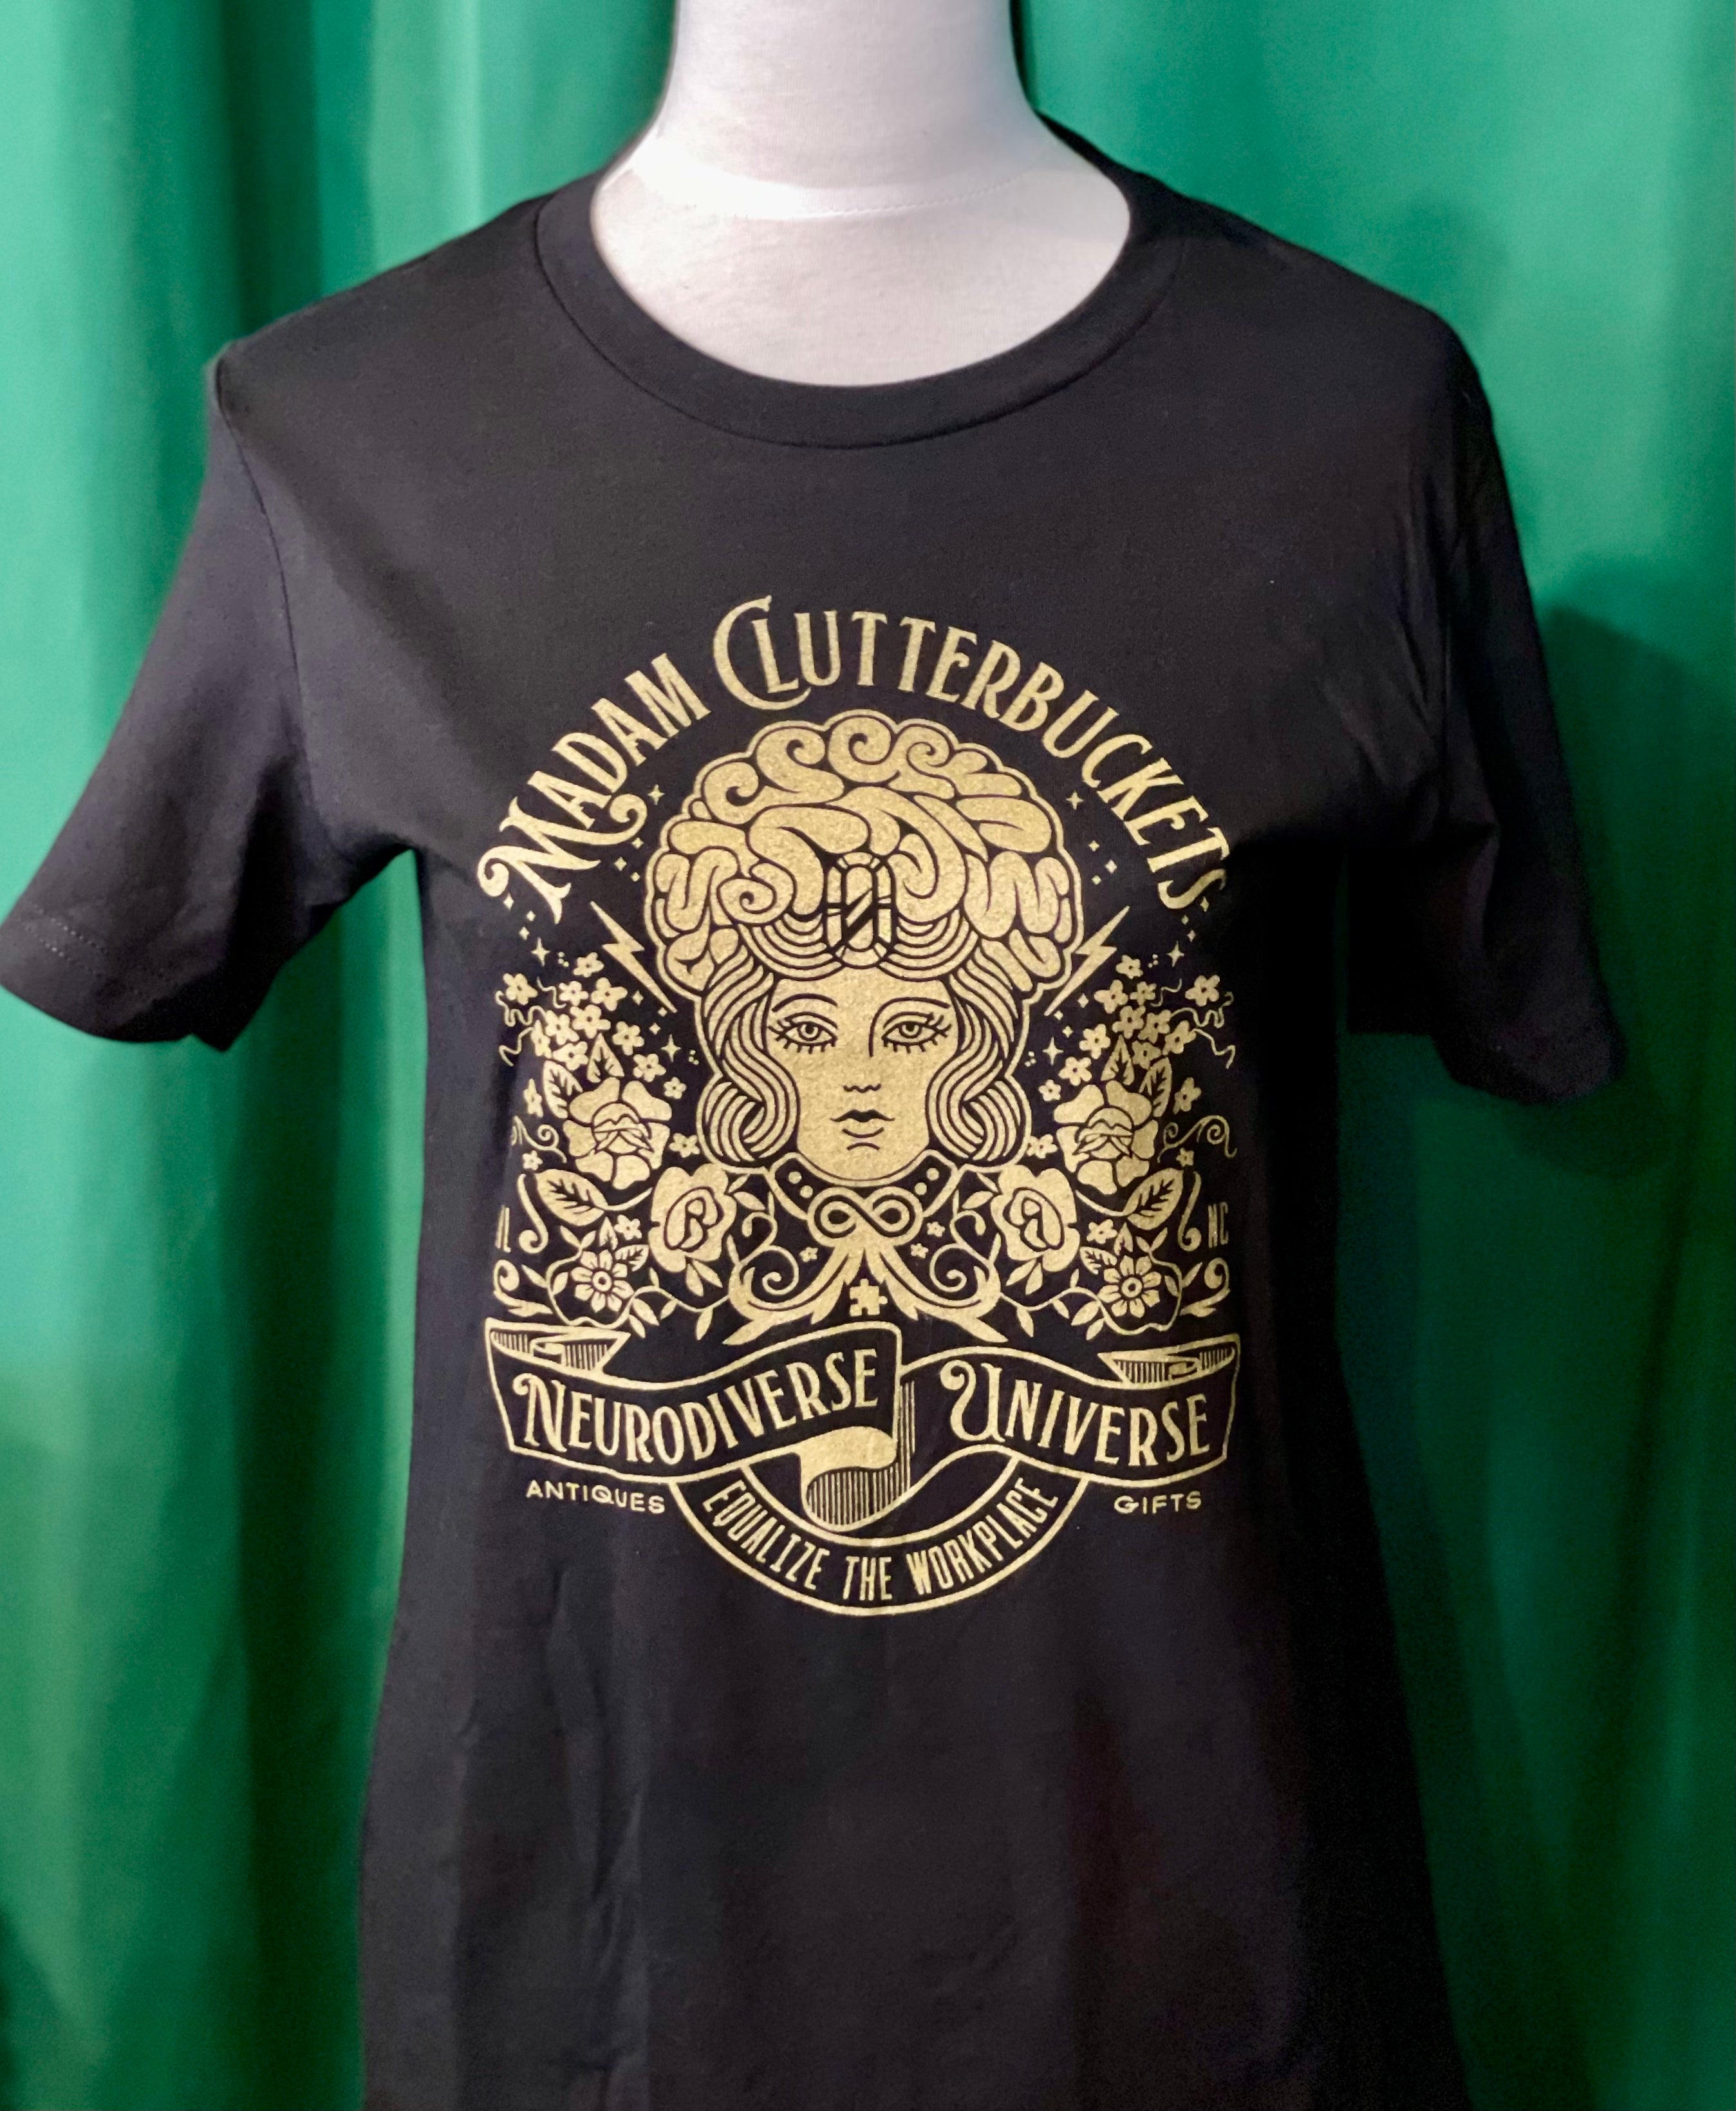 Madam Clutterbucket's Neurodiverse Universe Short Sleeve T-shirt!